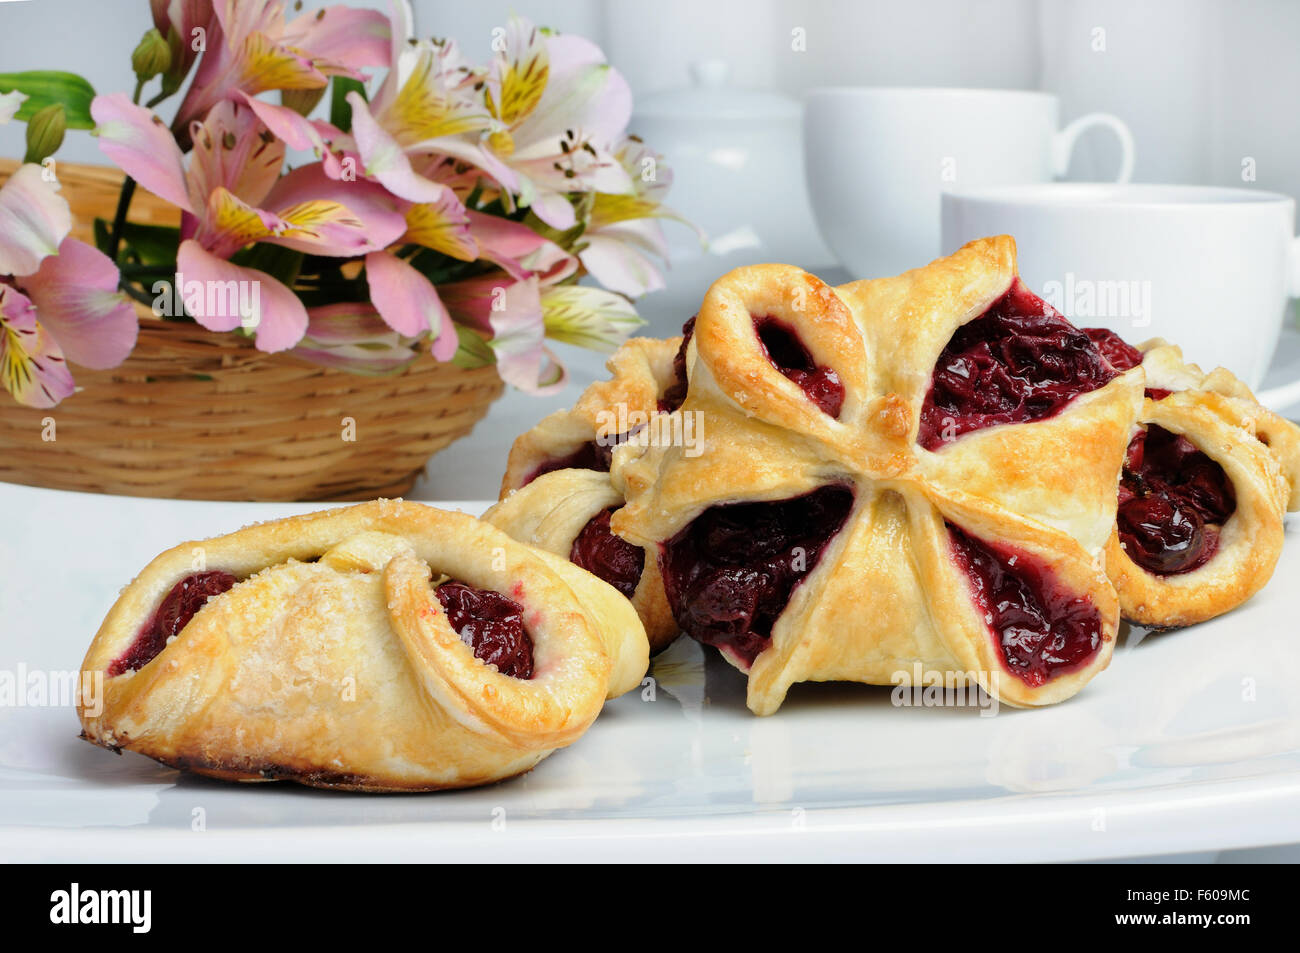 Bun puff pastry stuffed with cherries Stock Photo